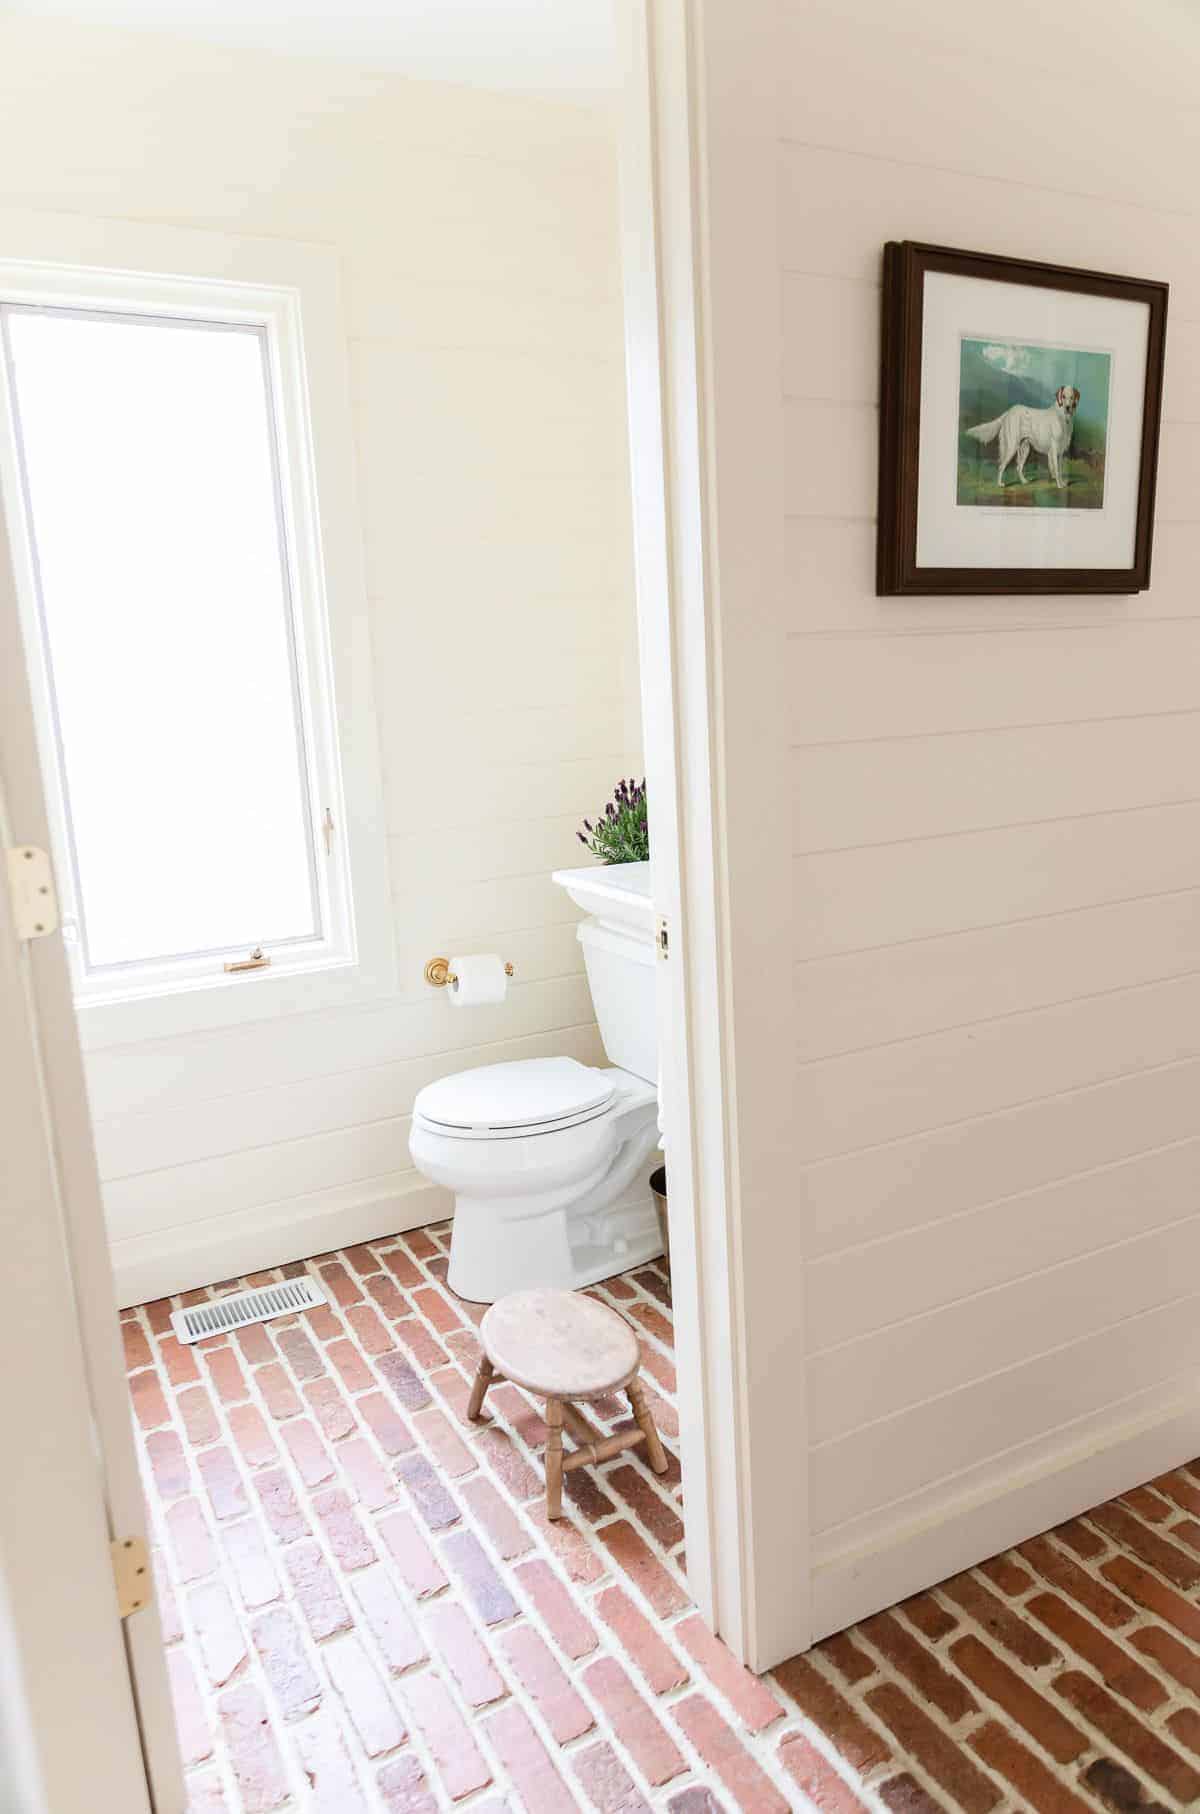 客人浴室与水平雪松镶板和砖地板,一壶薰衣草花stoechas的厕所。